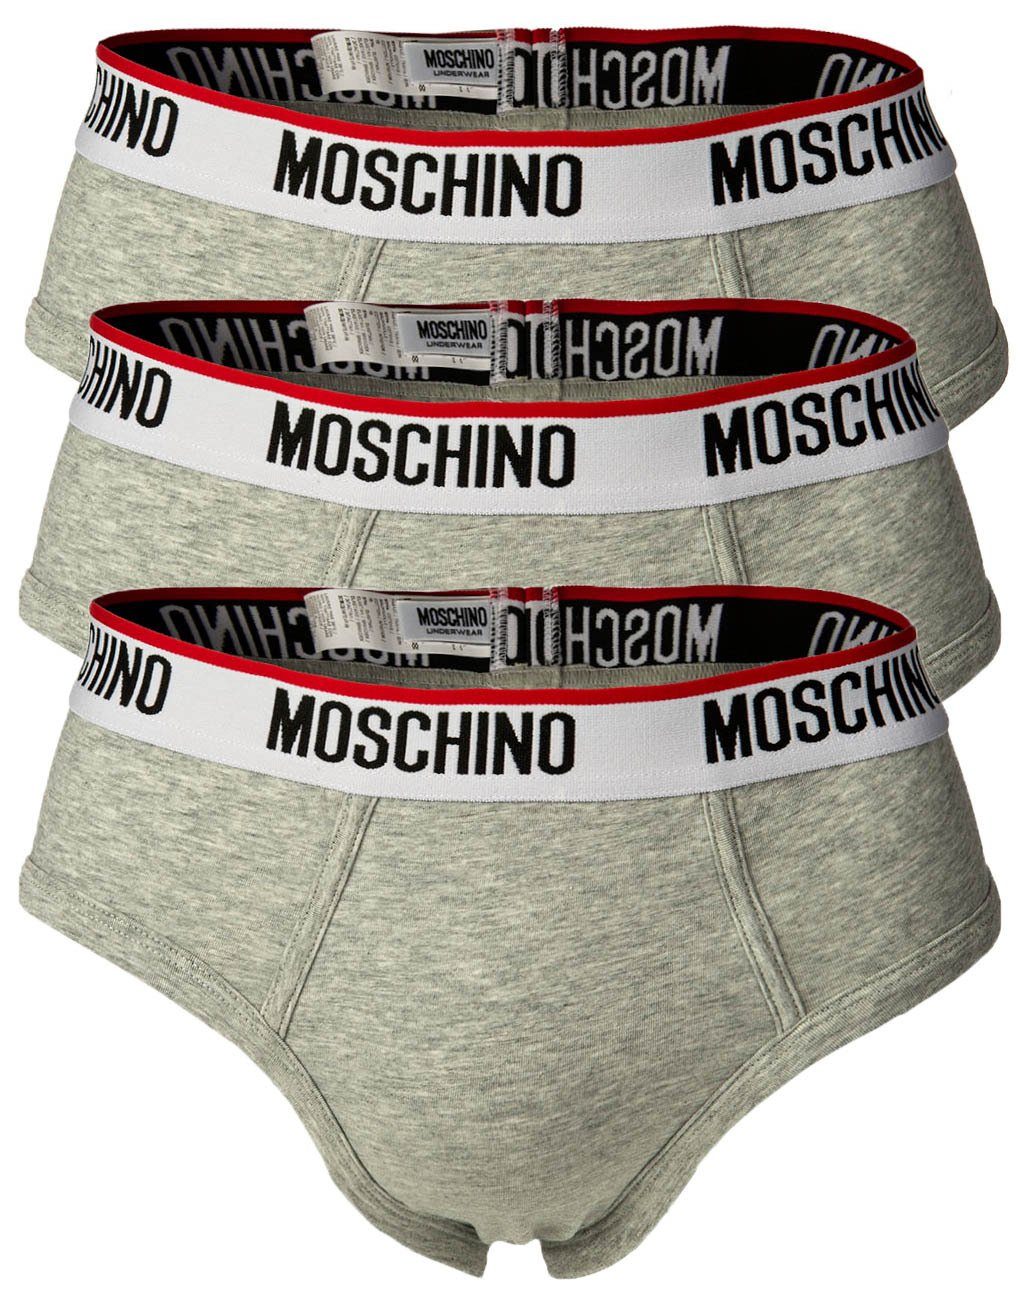 Moschino Slip Herren Slips Briefs, Cotton Pack Unterhose, 3er - Grau